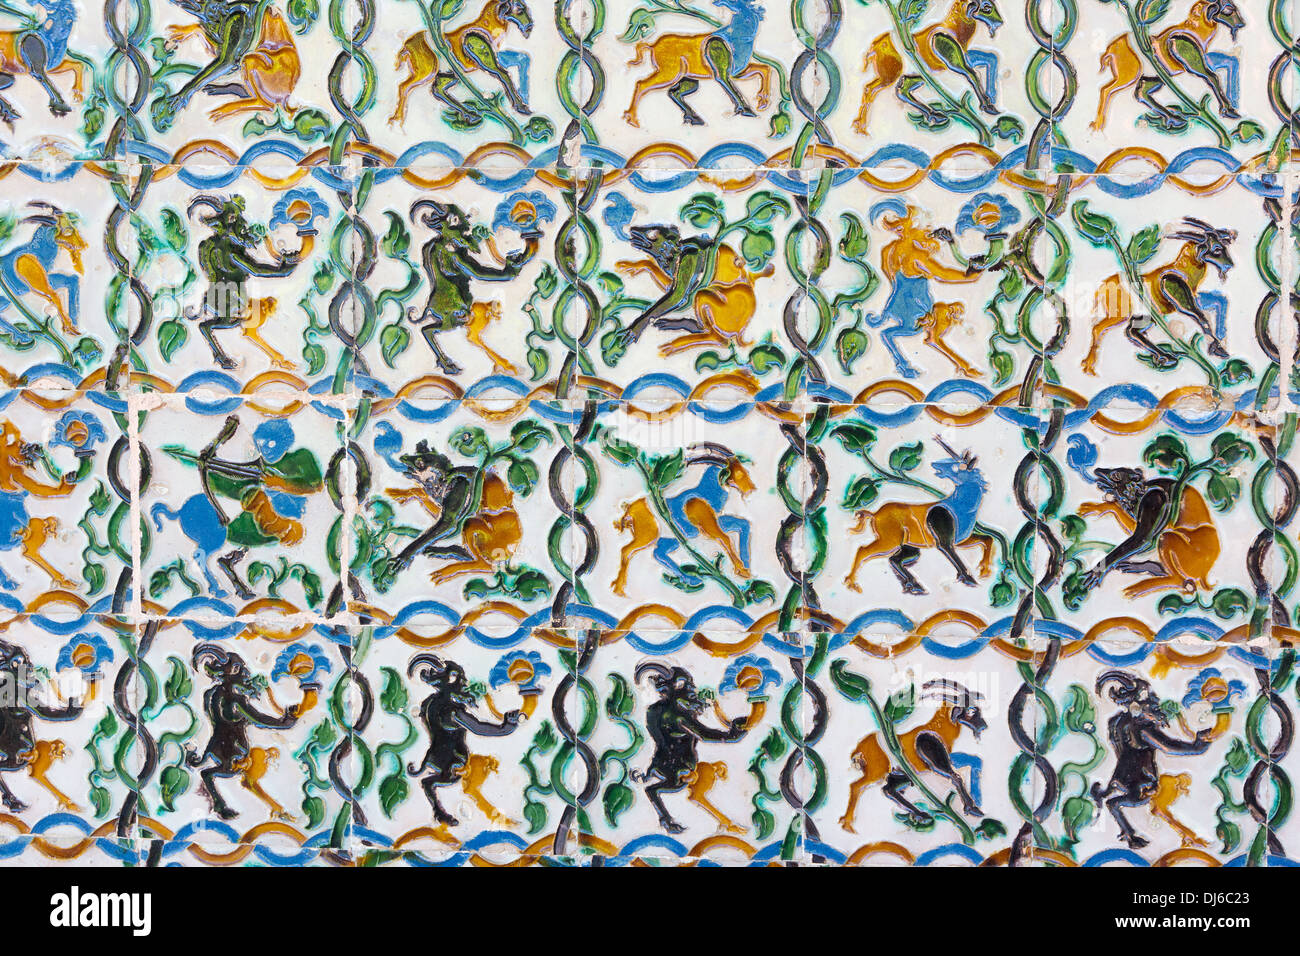 Détail de carreaux dans les jardins du palais royal de l'Alcazar de Séville Espagne Banque D'Images